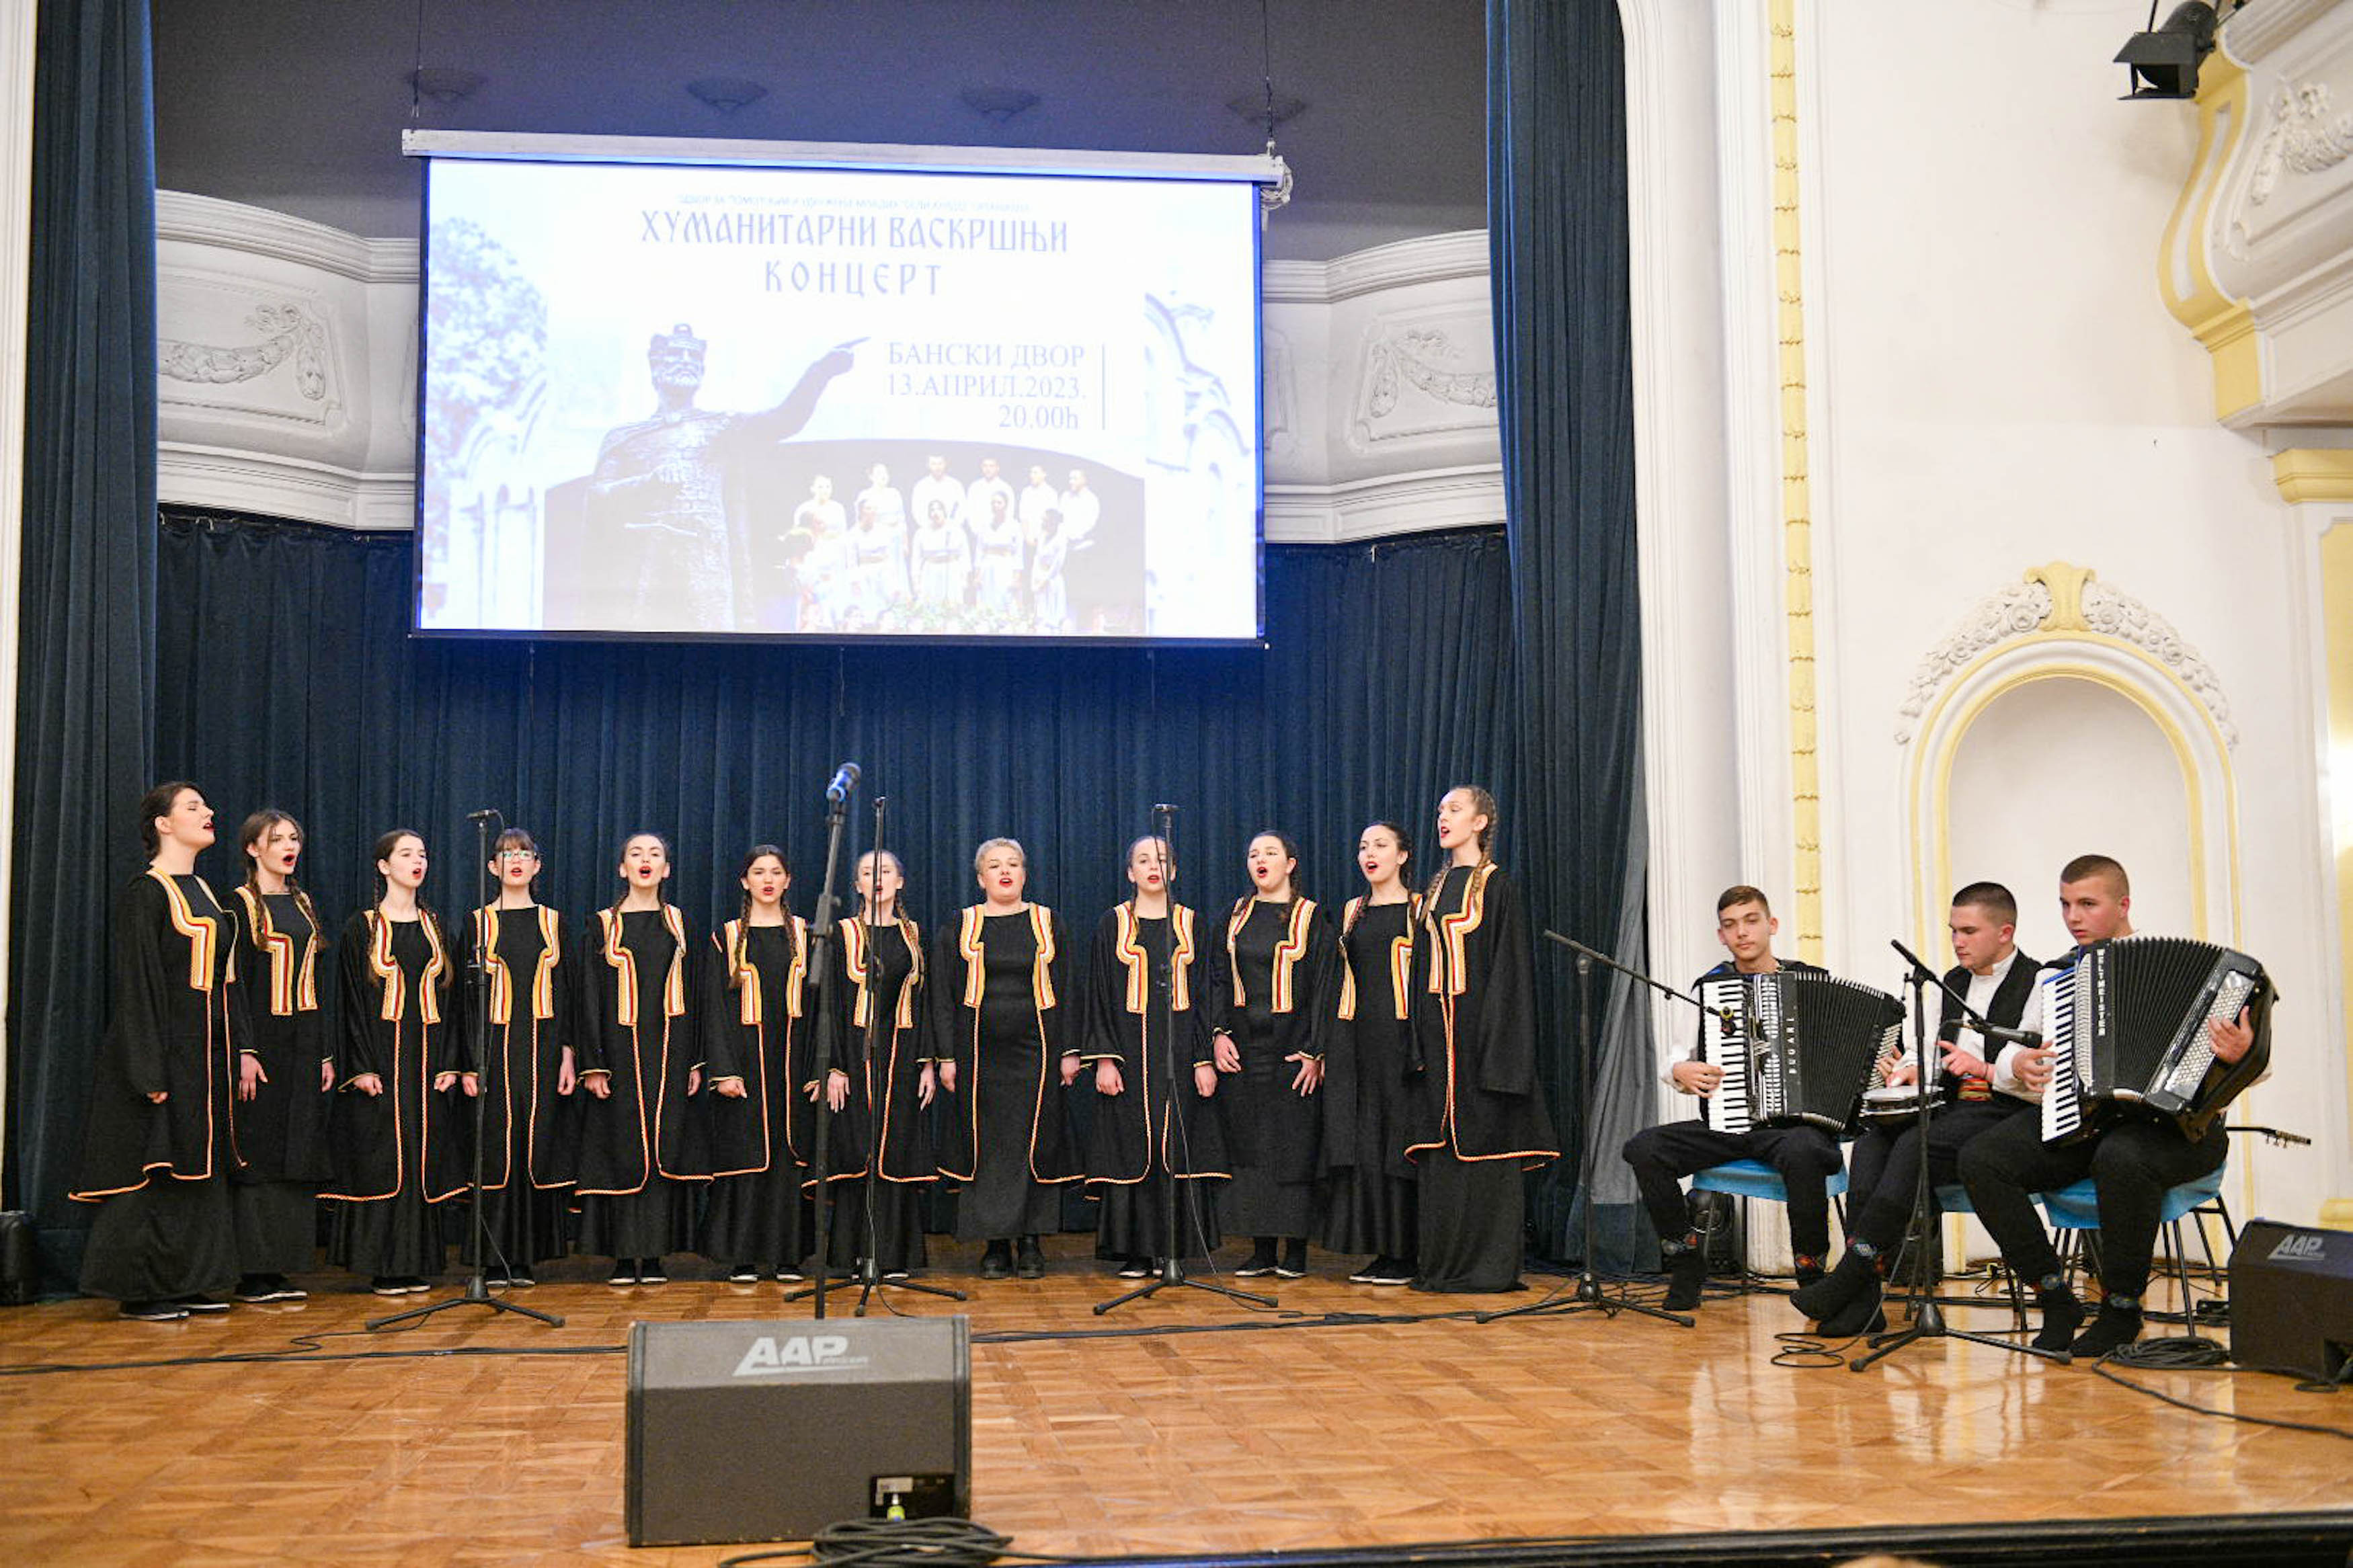 Održan humanitarni vaskršnji koncert u Banskom dvoru